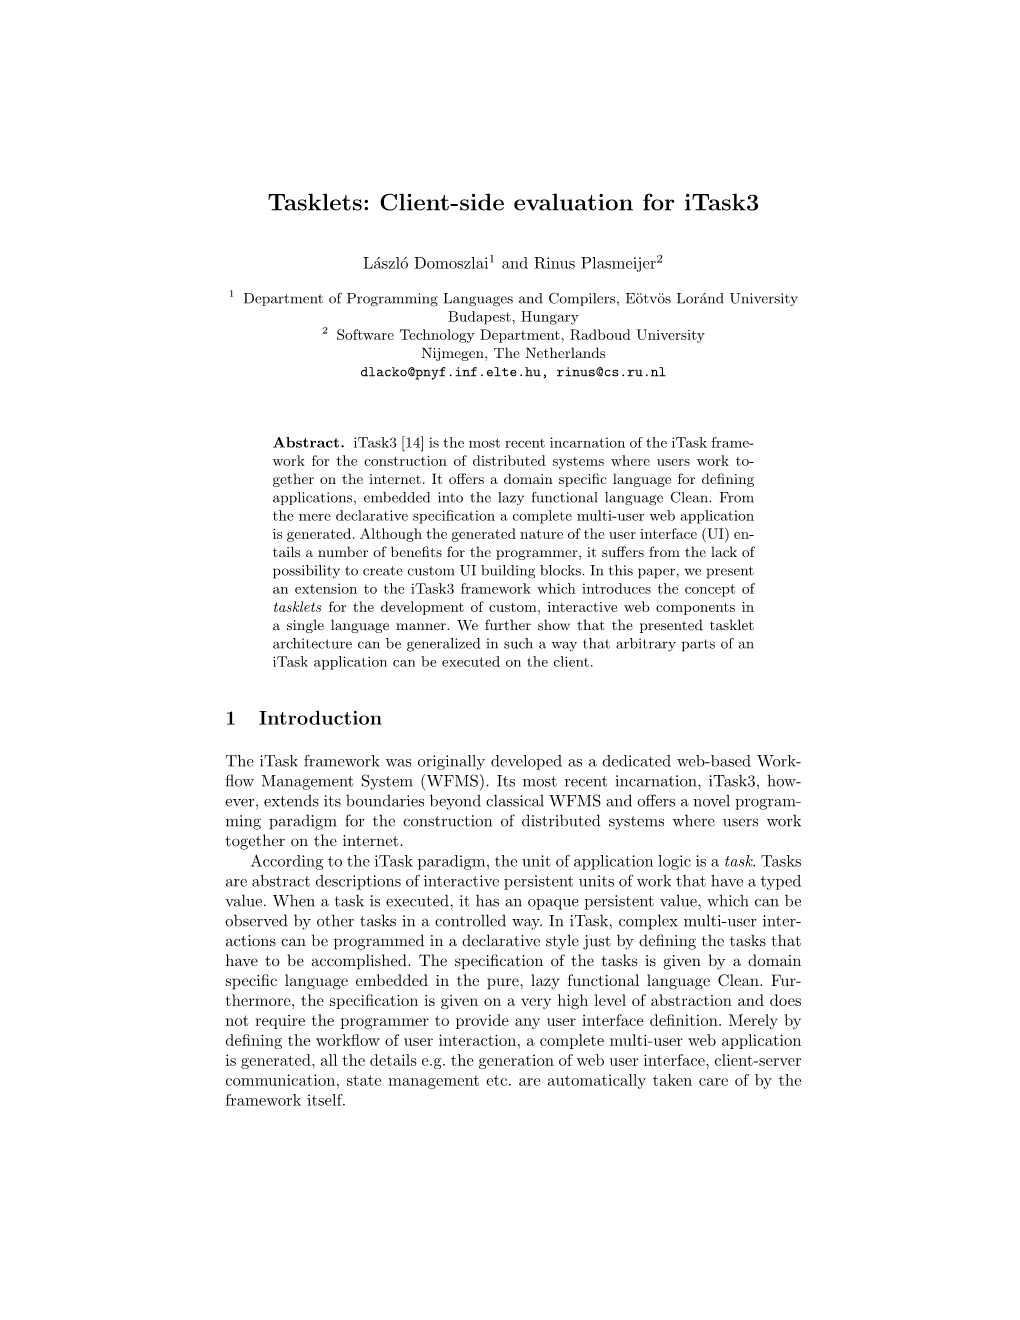 Tasklets: Client-Side Evaluation for Itask3